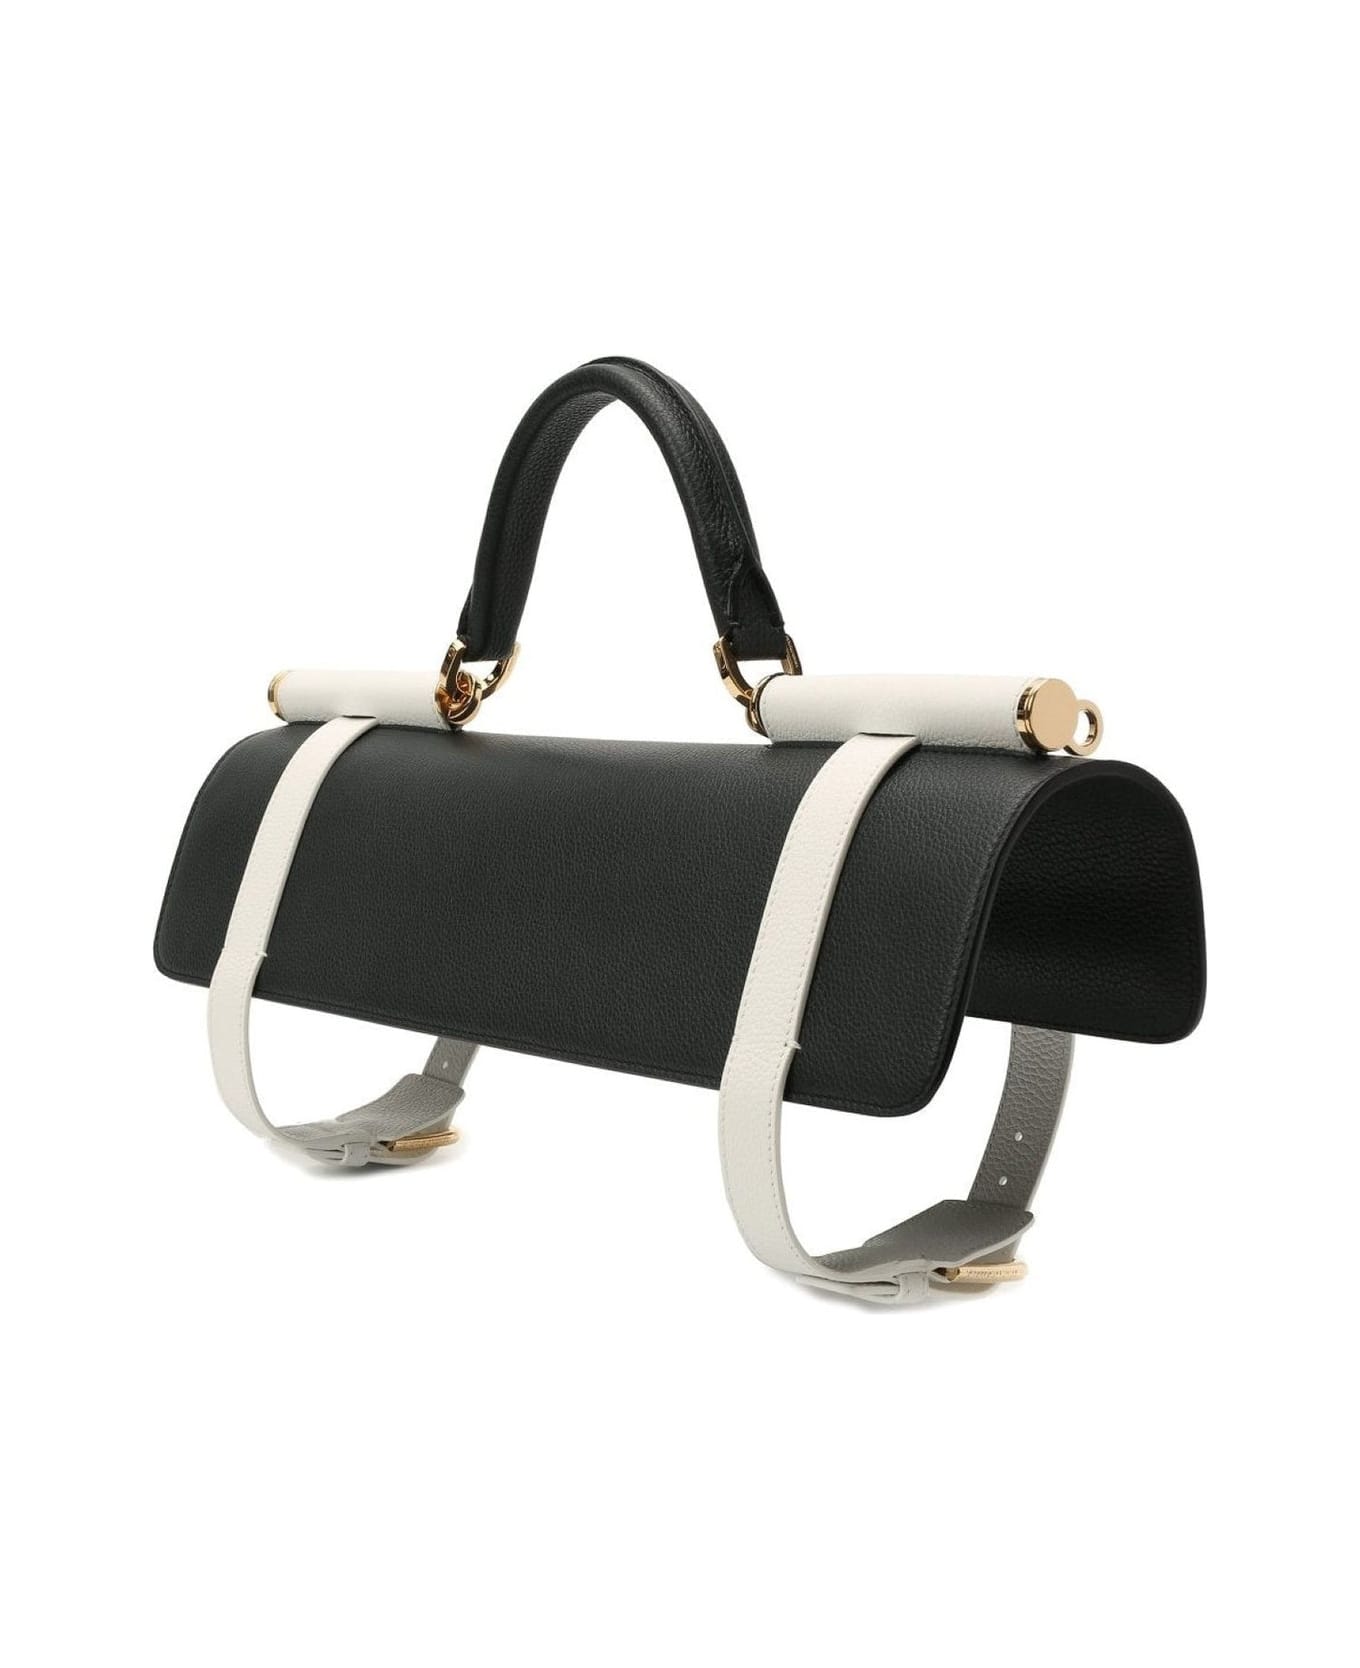 Dolce & Gabbana Sicily Towel-holder Bag - Black